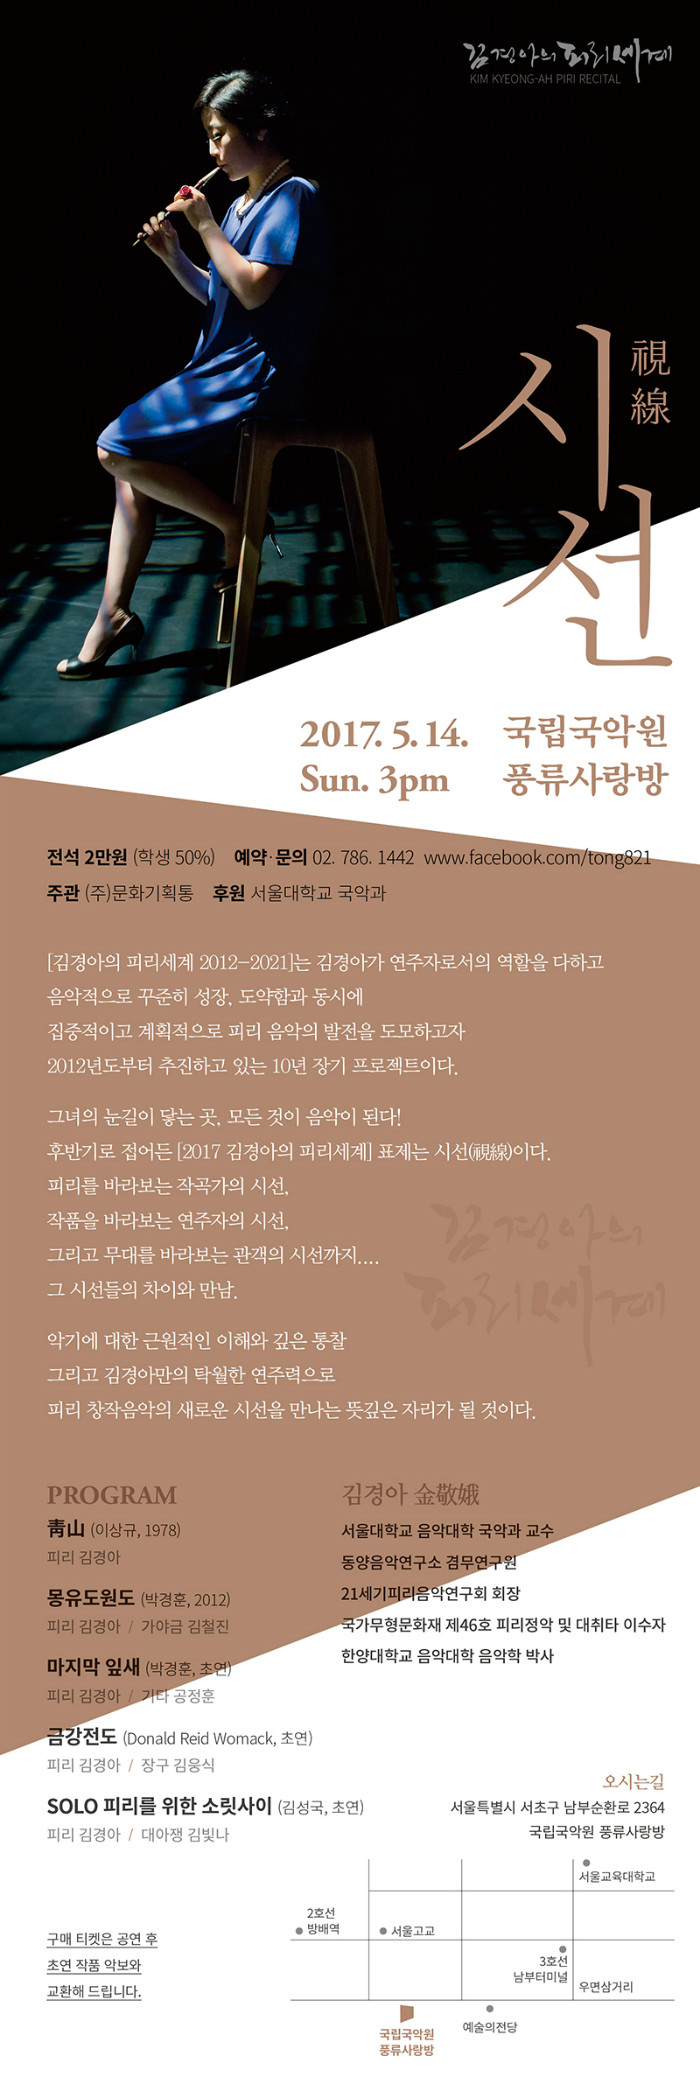 2017 김경아의 피리 세계 웹전단.jpg